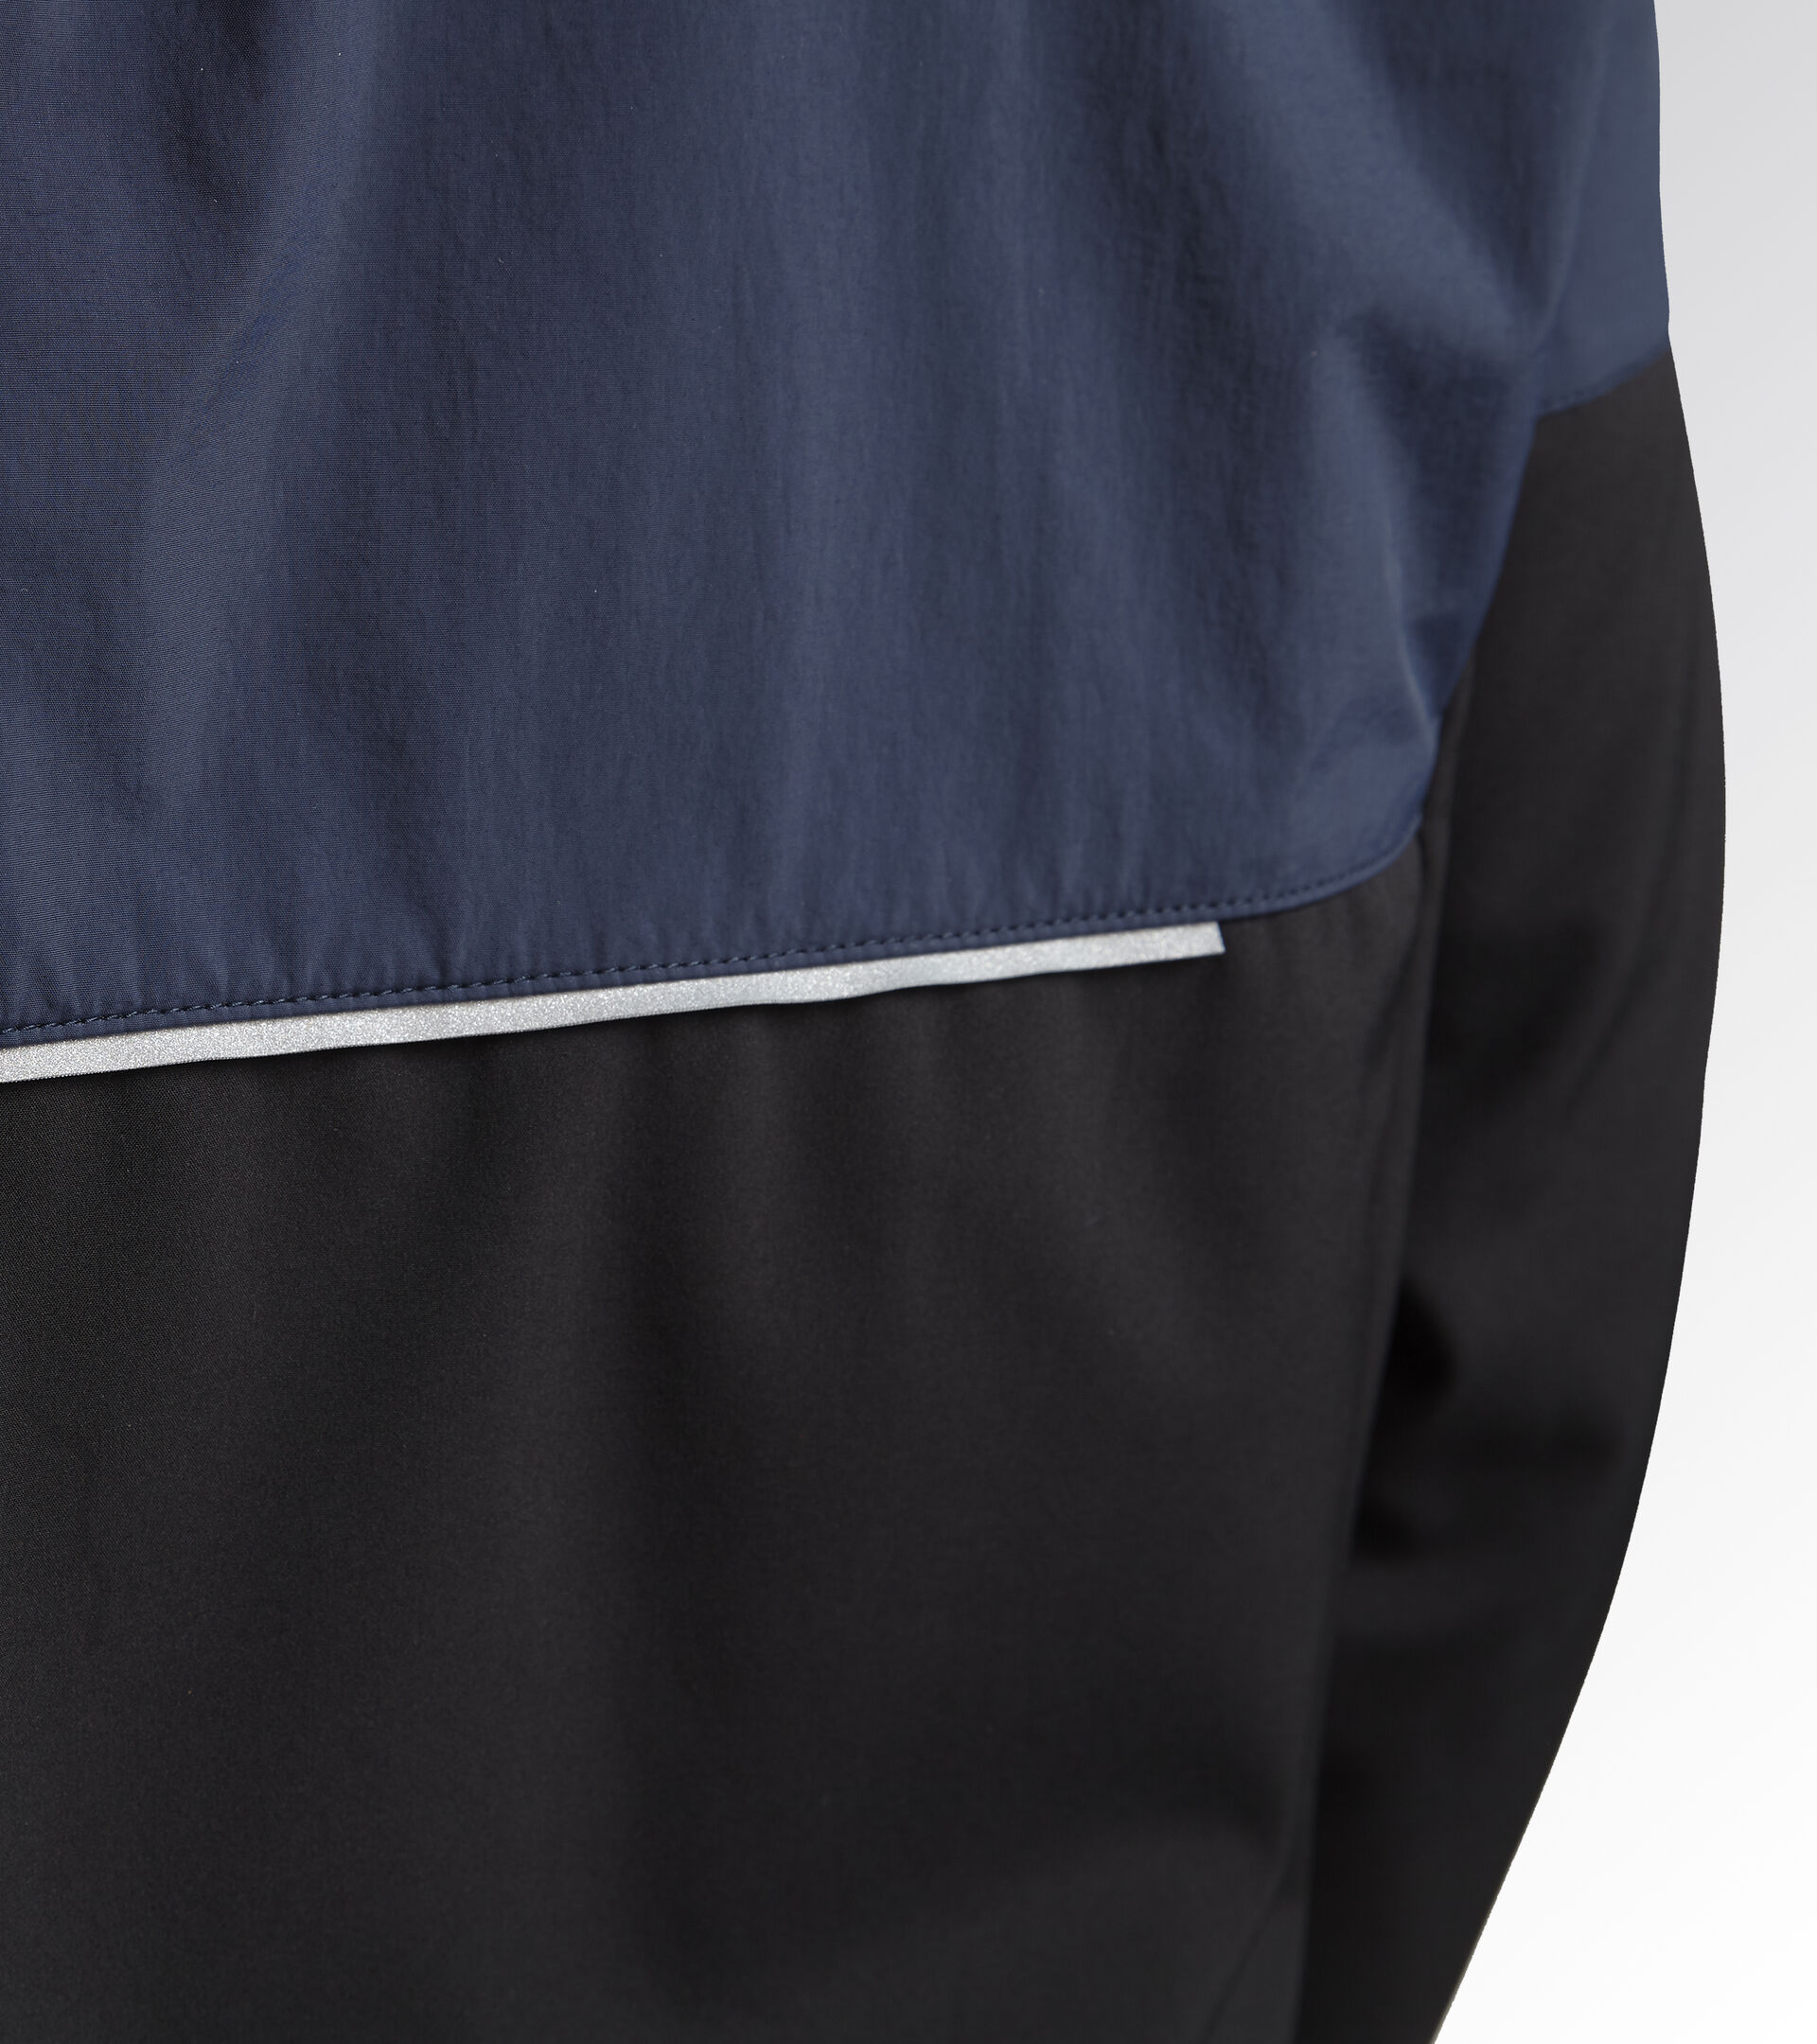 Work jacket SOFTSHELL HYBRID BLACK/BLUE DENIM - Utility